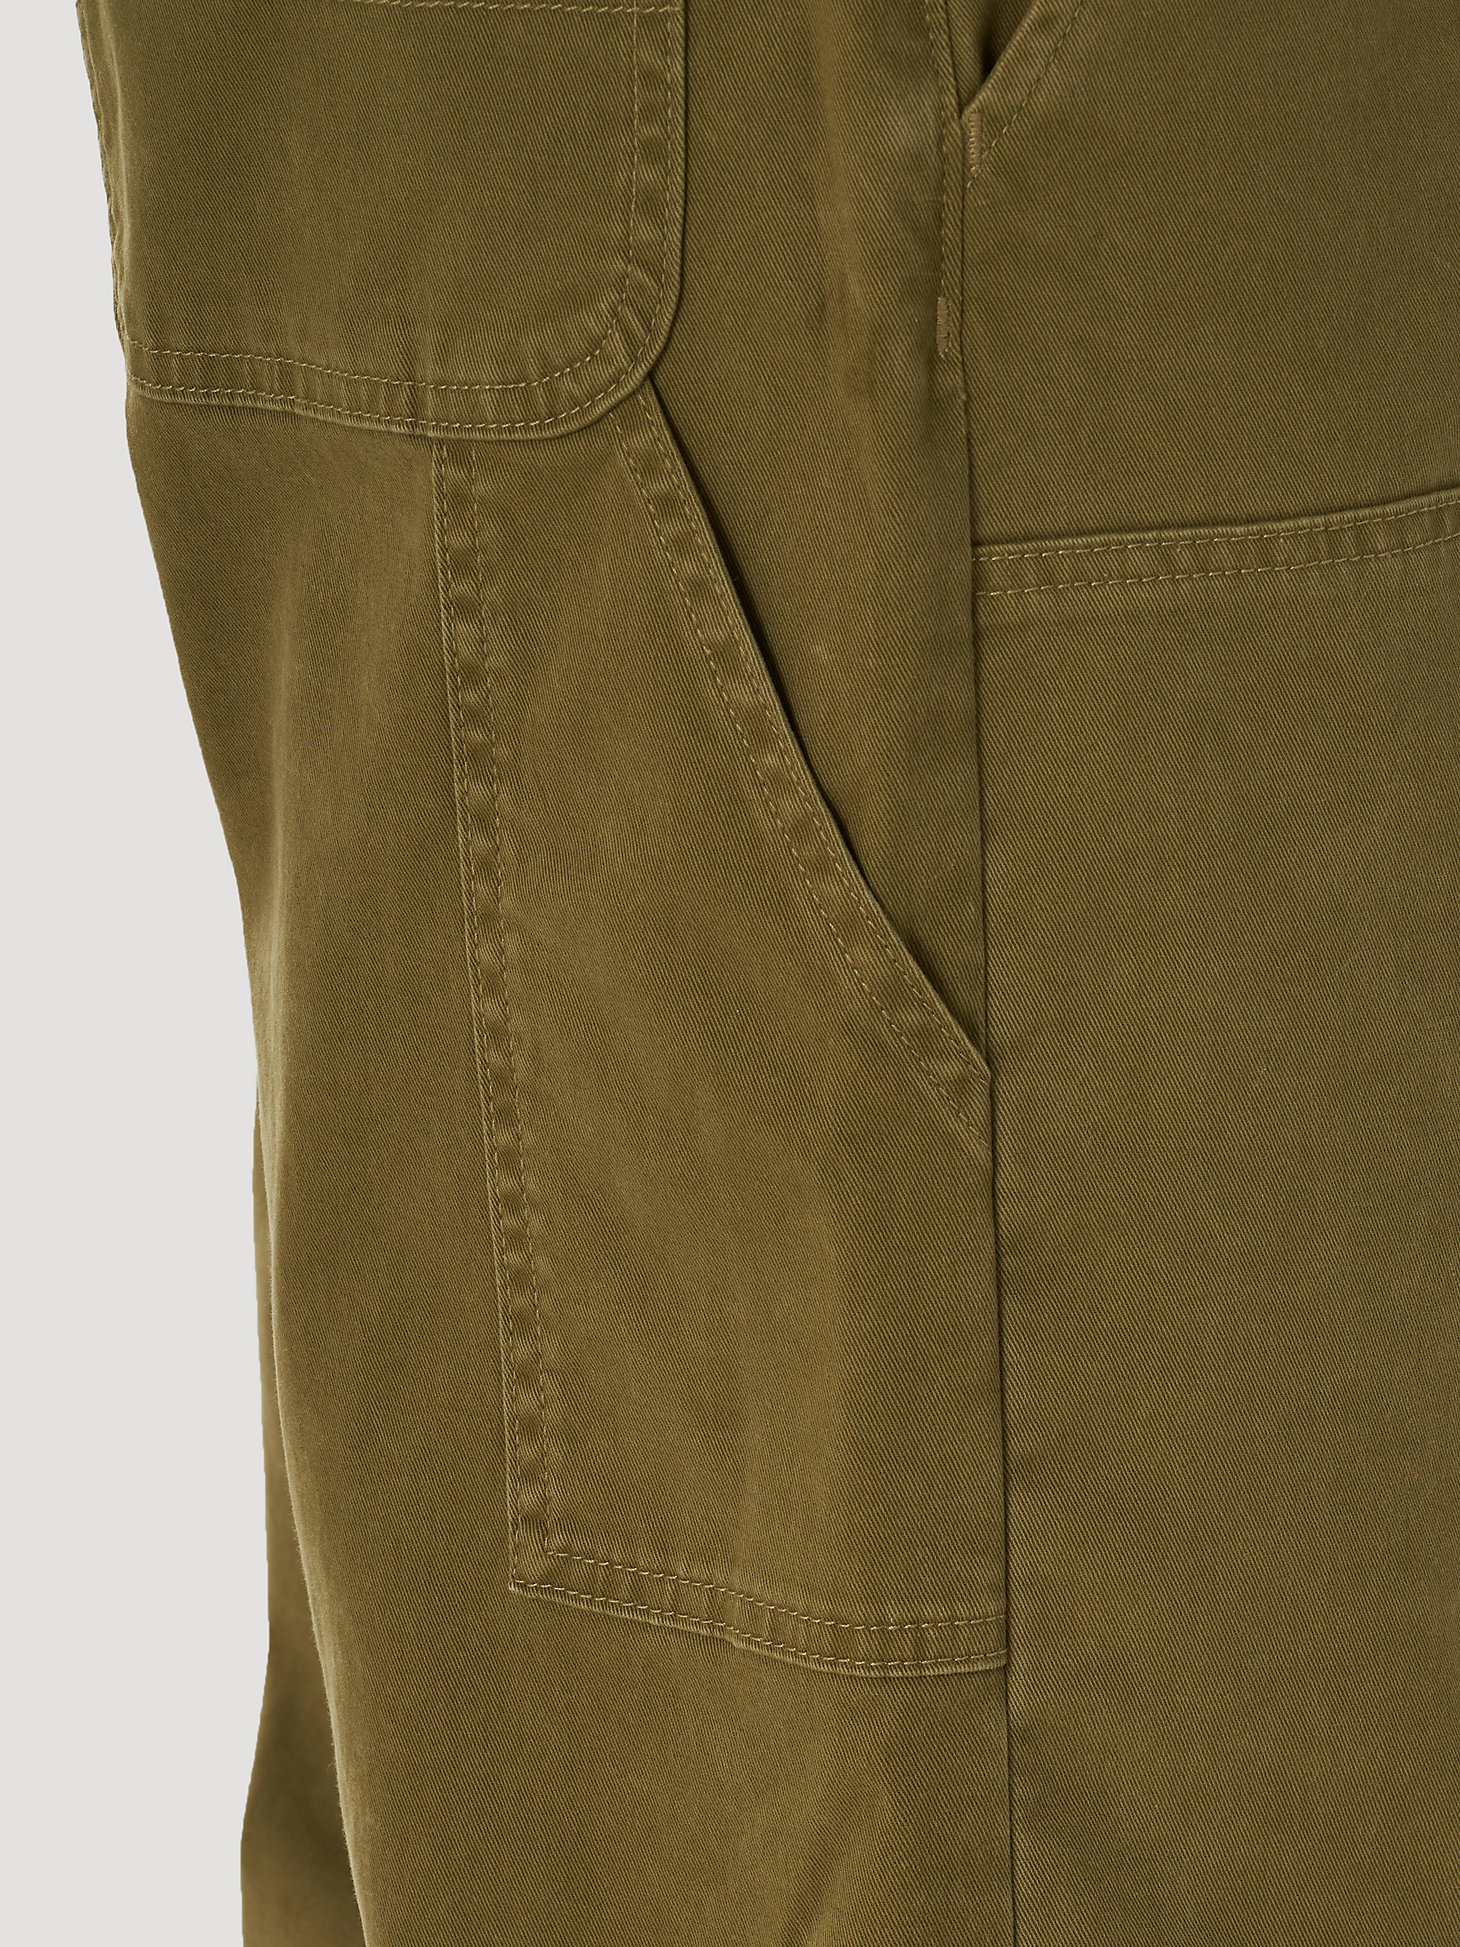 Men's Wrangler® Casey Jones Utility Pant in Lone Tree Green alternative view 6